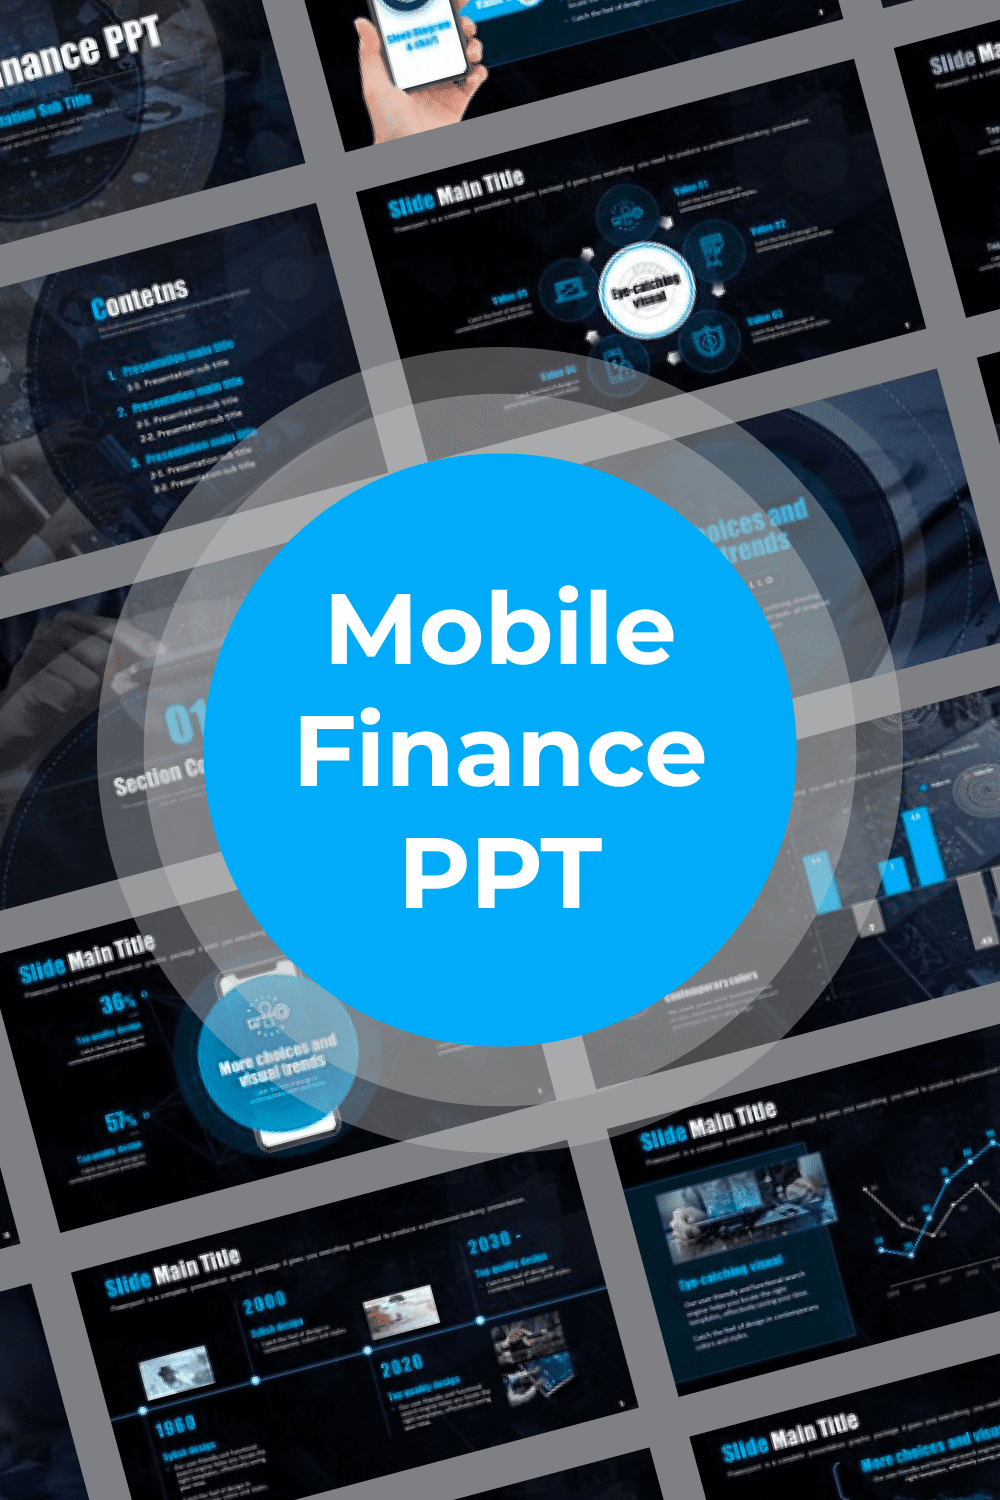 Mobile Finance PPT Pinterest.